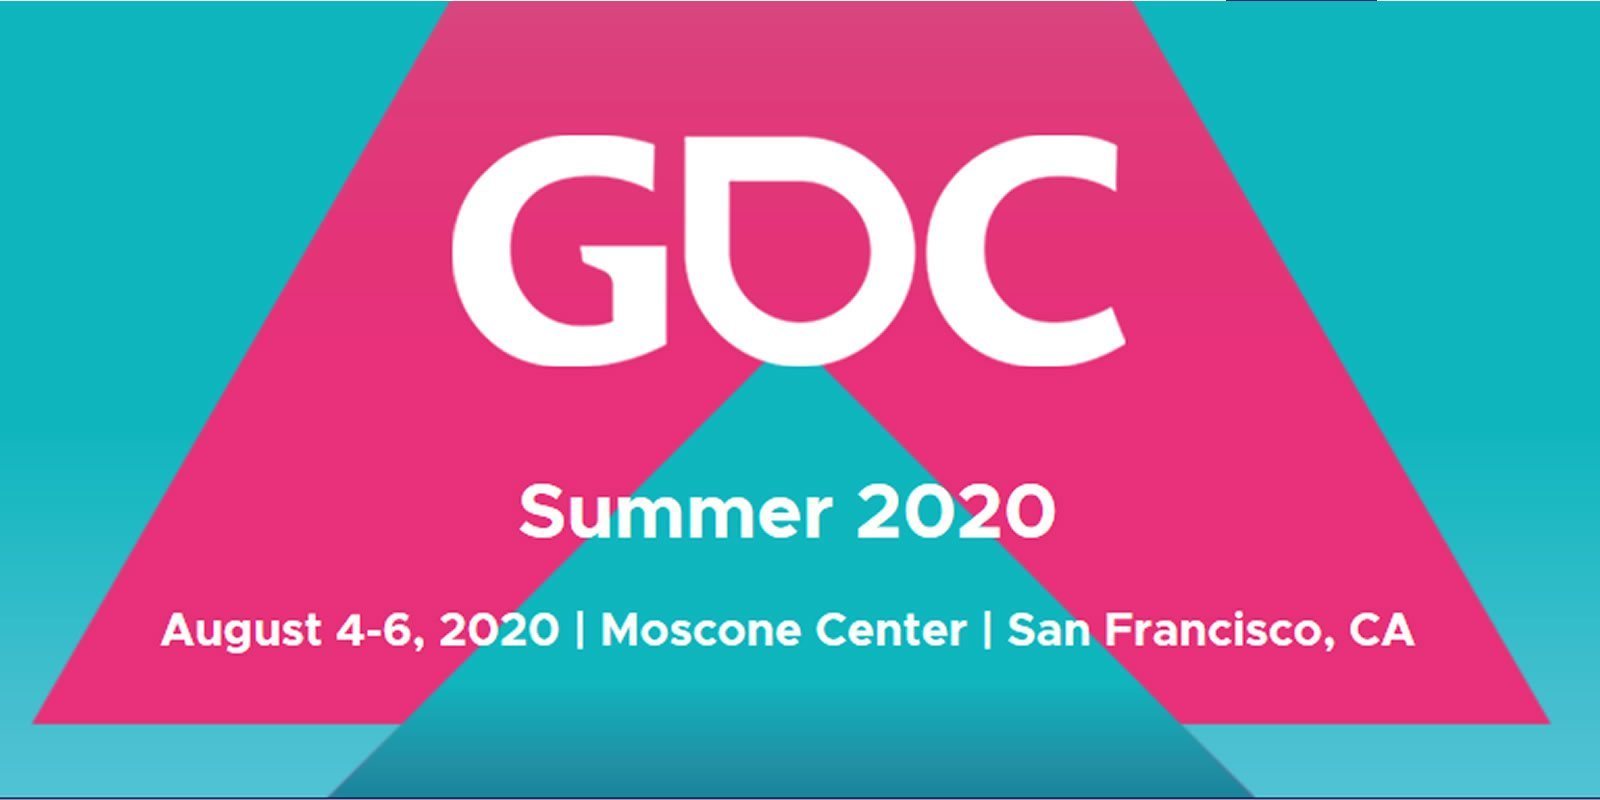 Se anuncian las fechas de la GDC 2020 tras su retraso: la GDC Summer